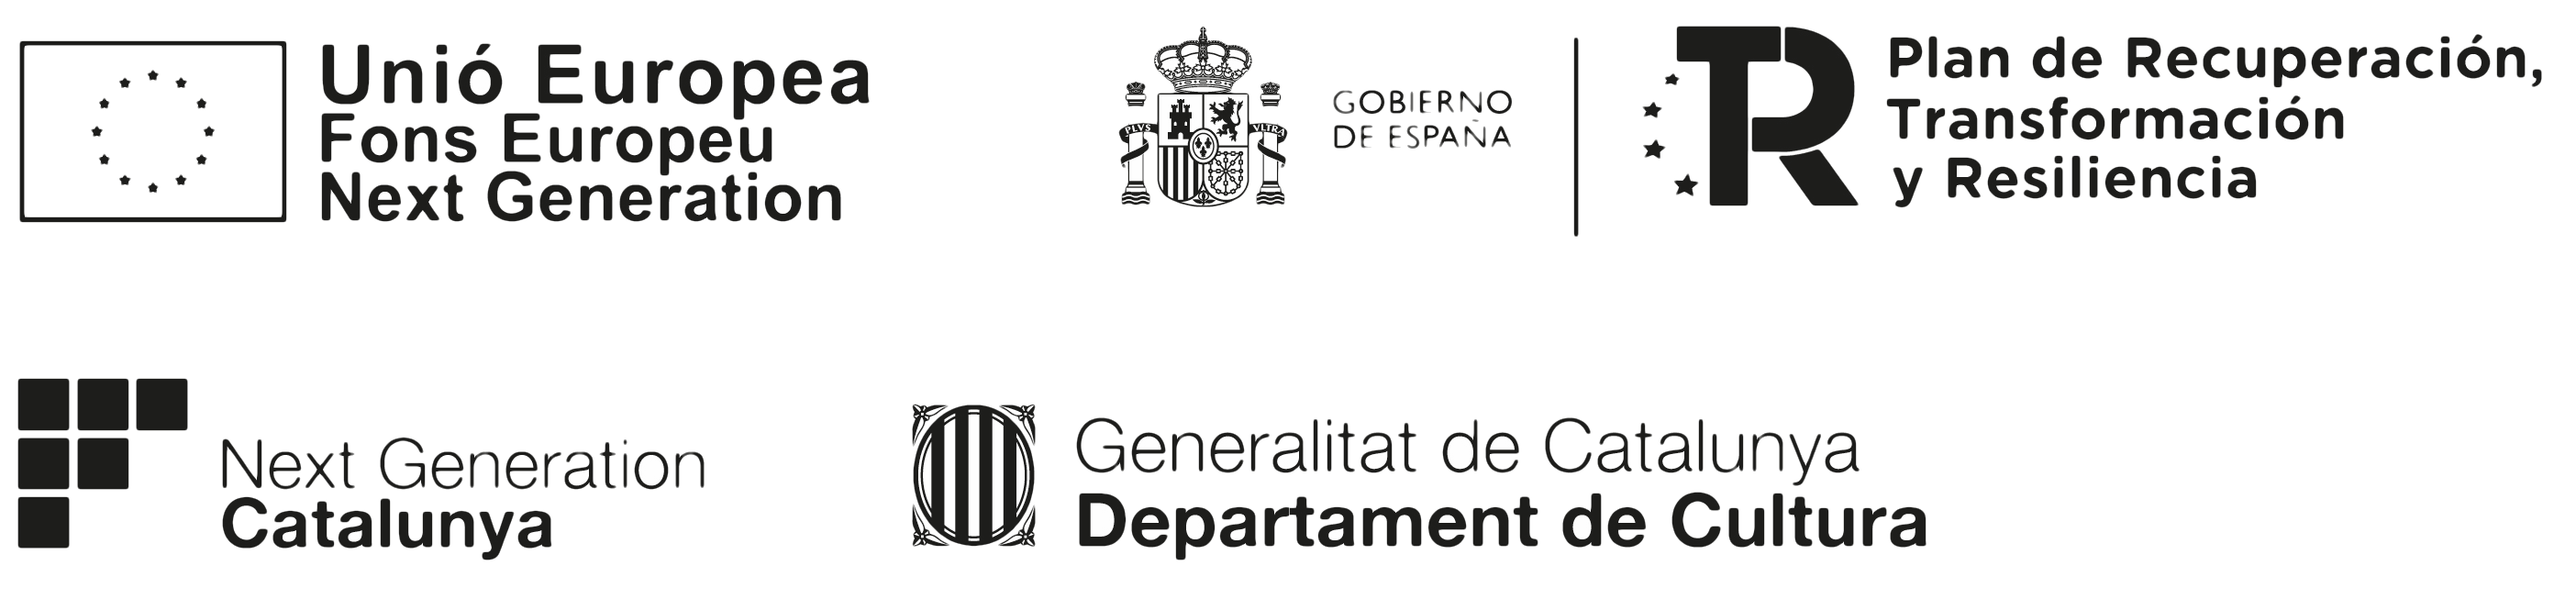 Generalitat de Catalunya - Departament de Cultura